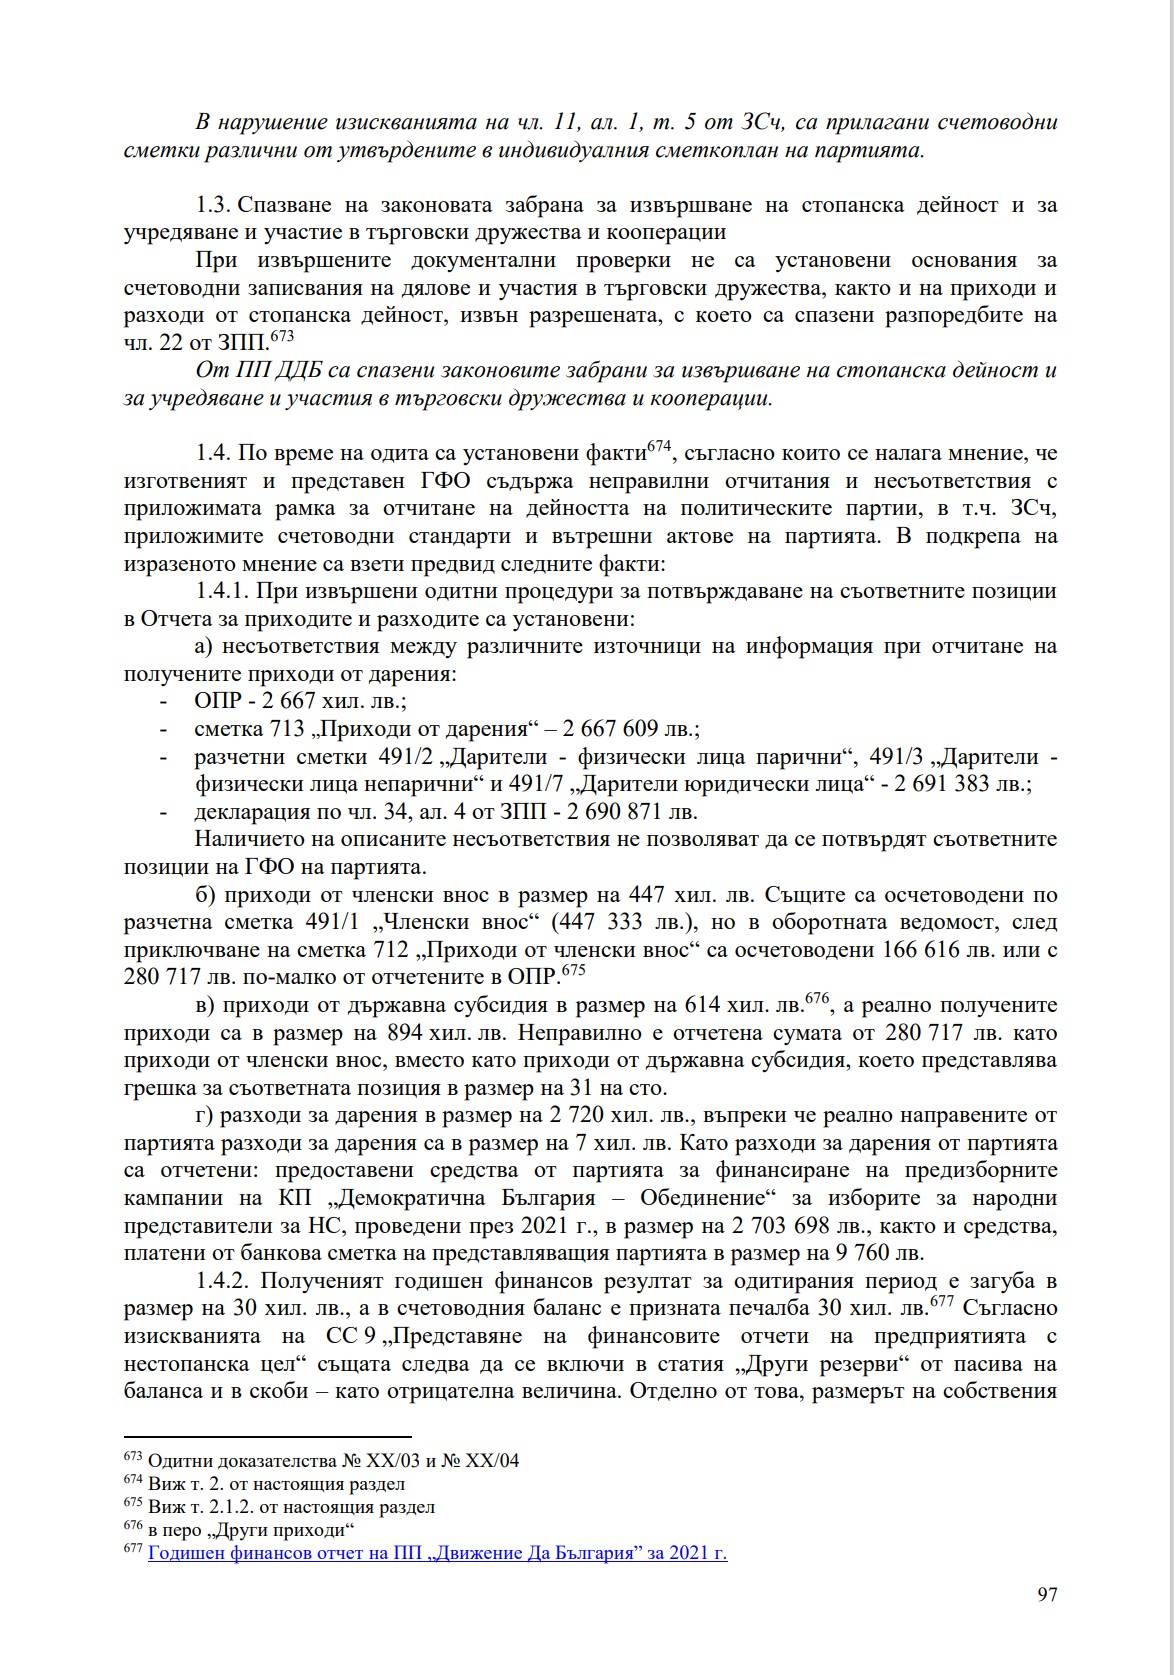 Част от доклада на Сметната палата относно нарушенията в отчетите на Да, България